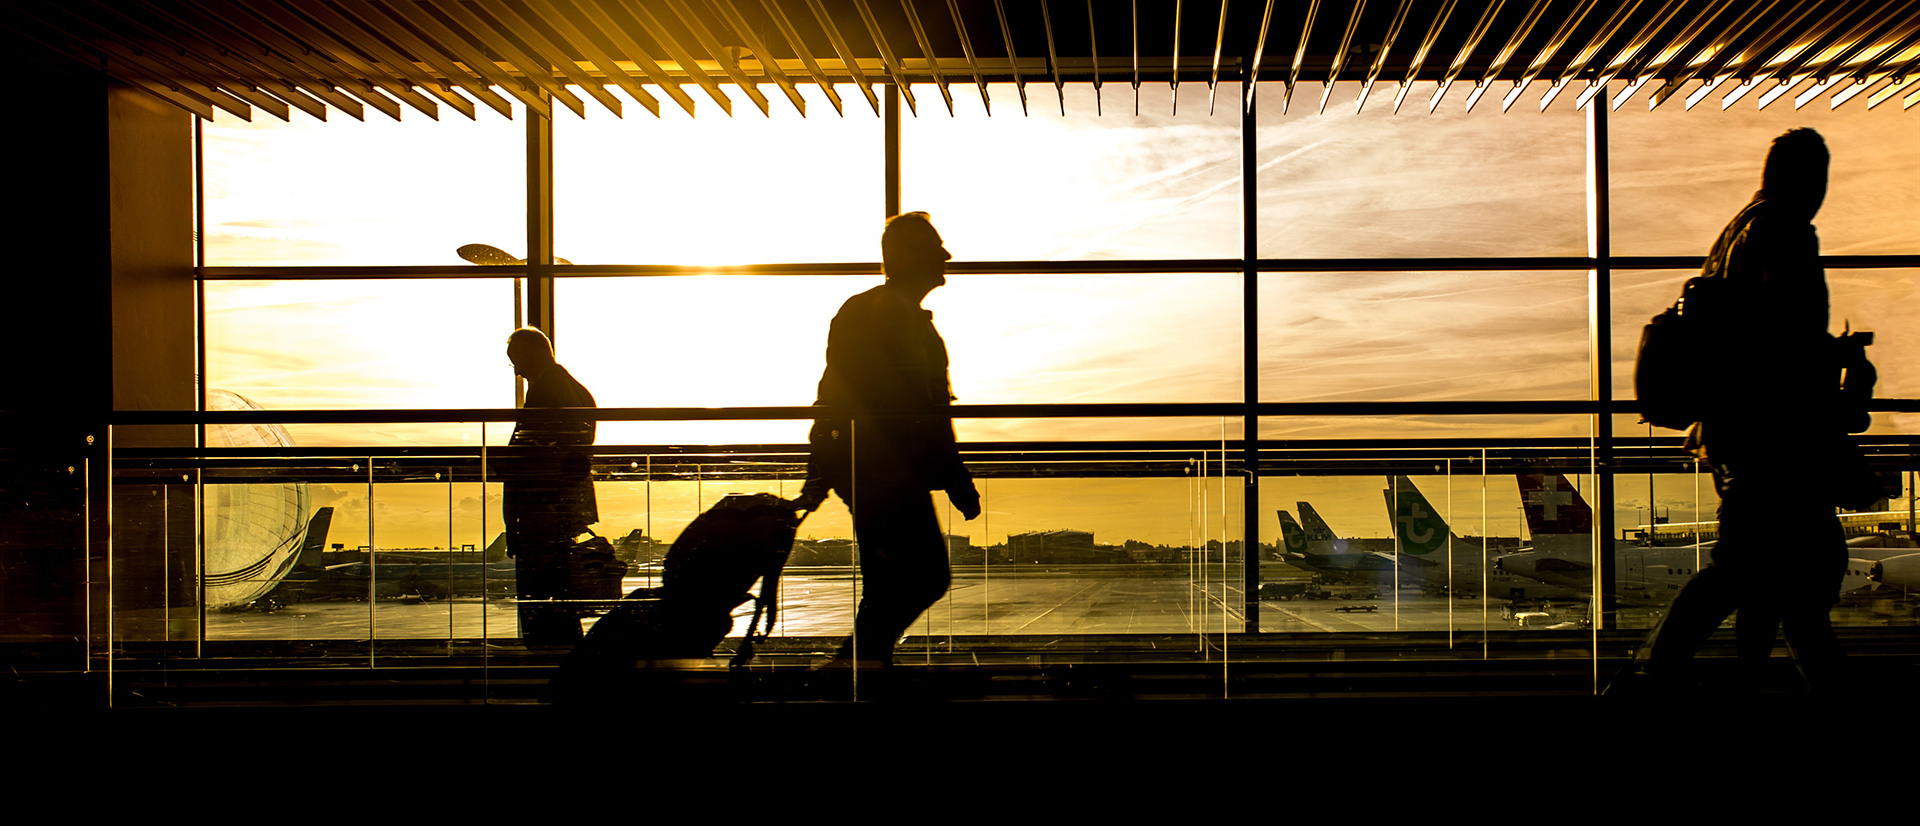 airport-dawn-travelers